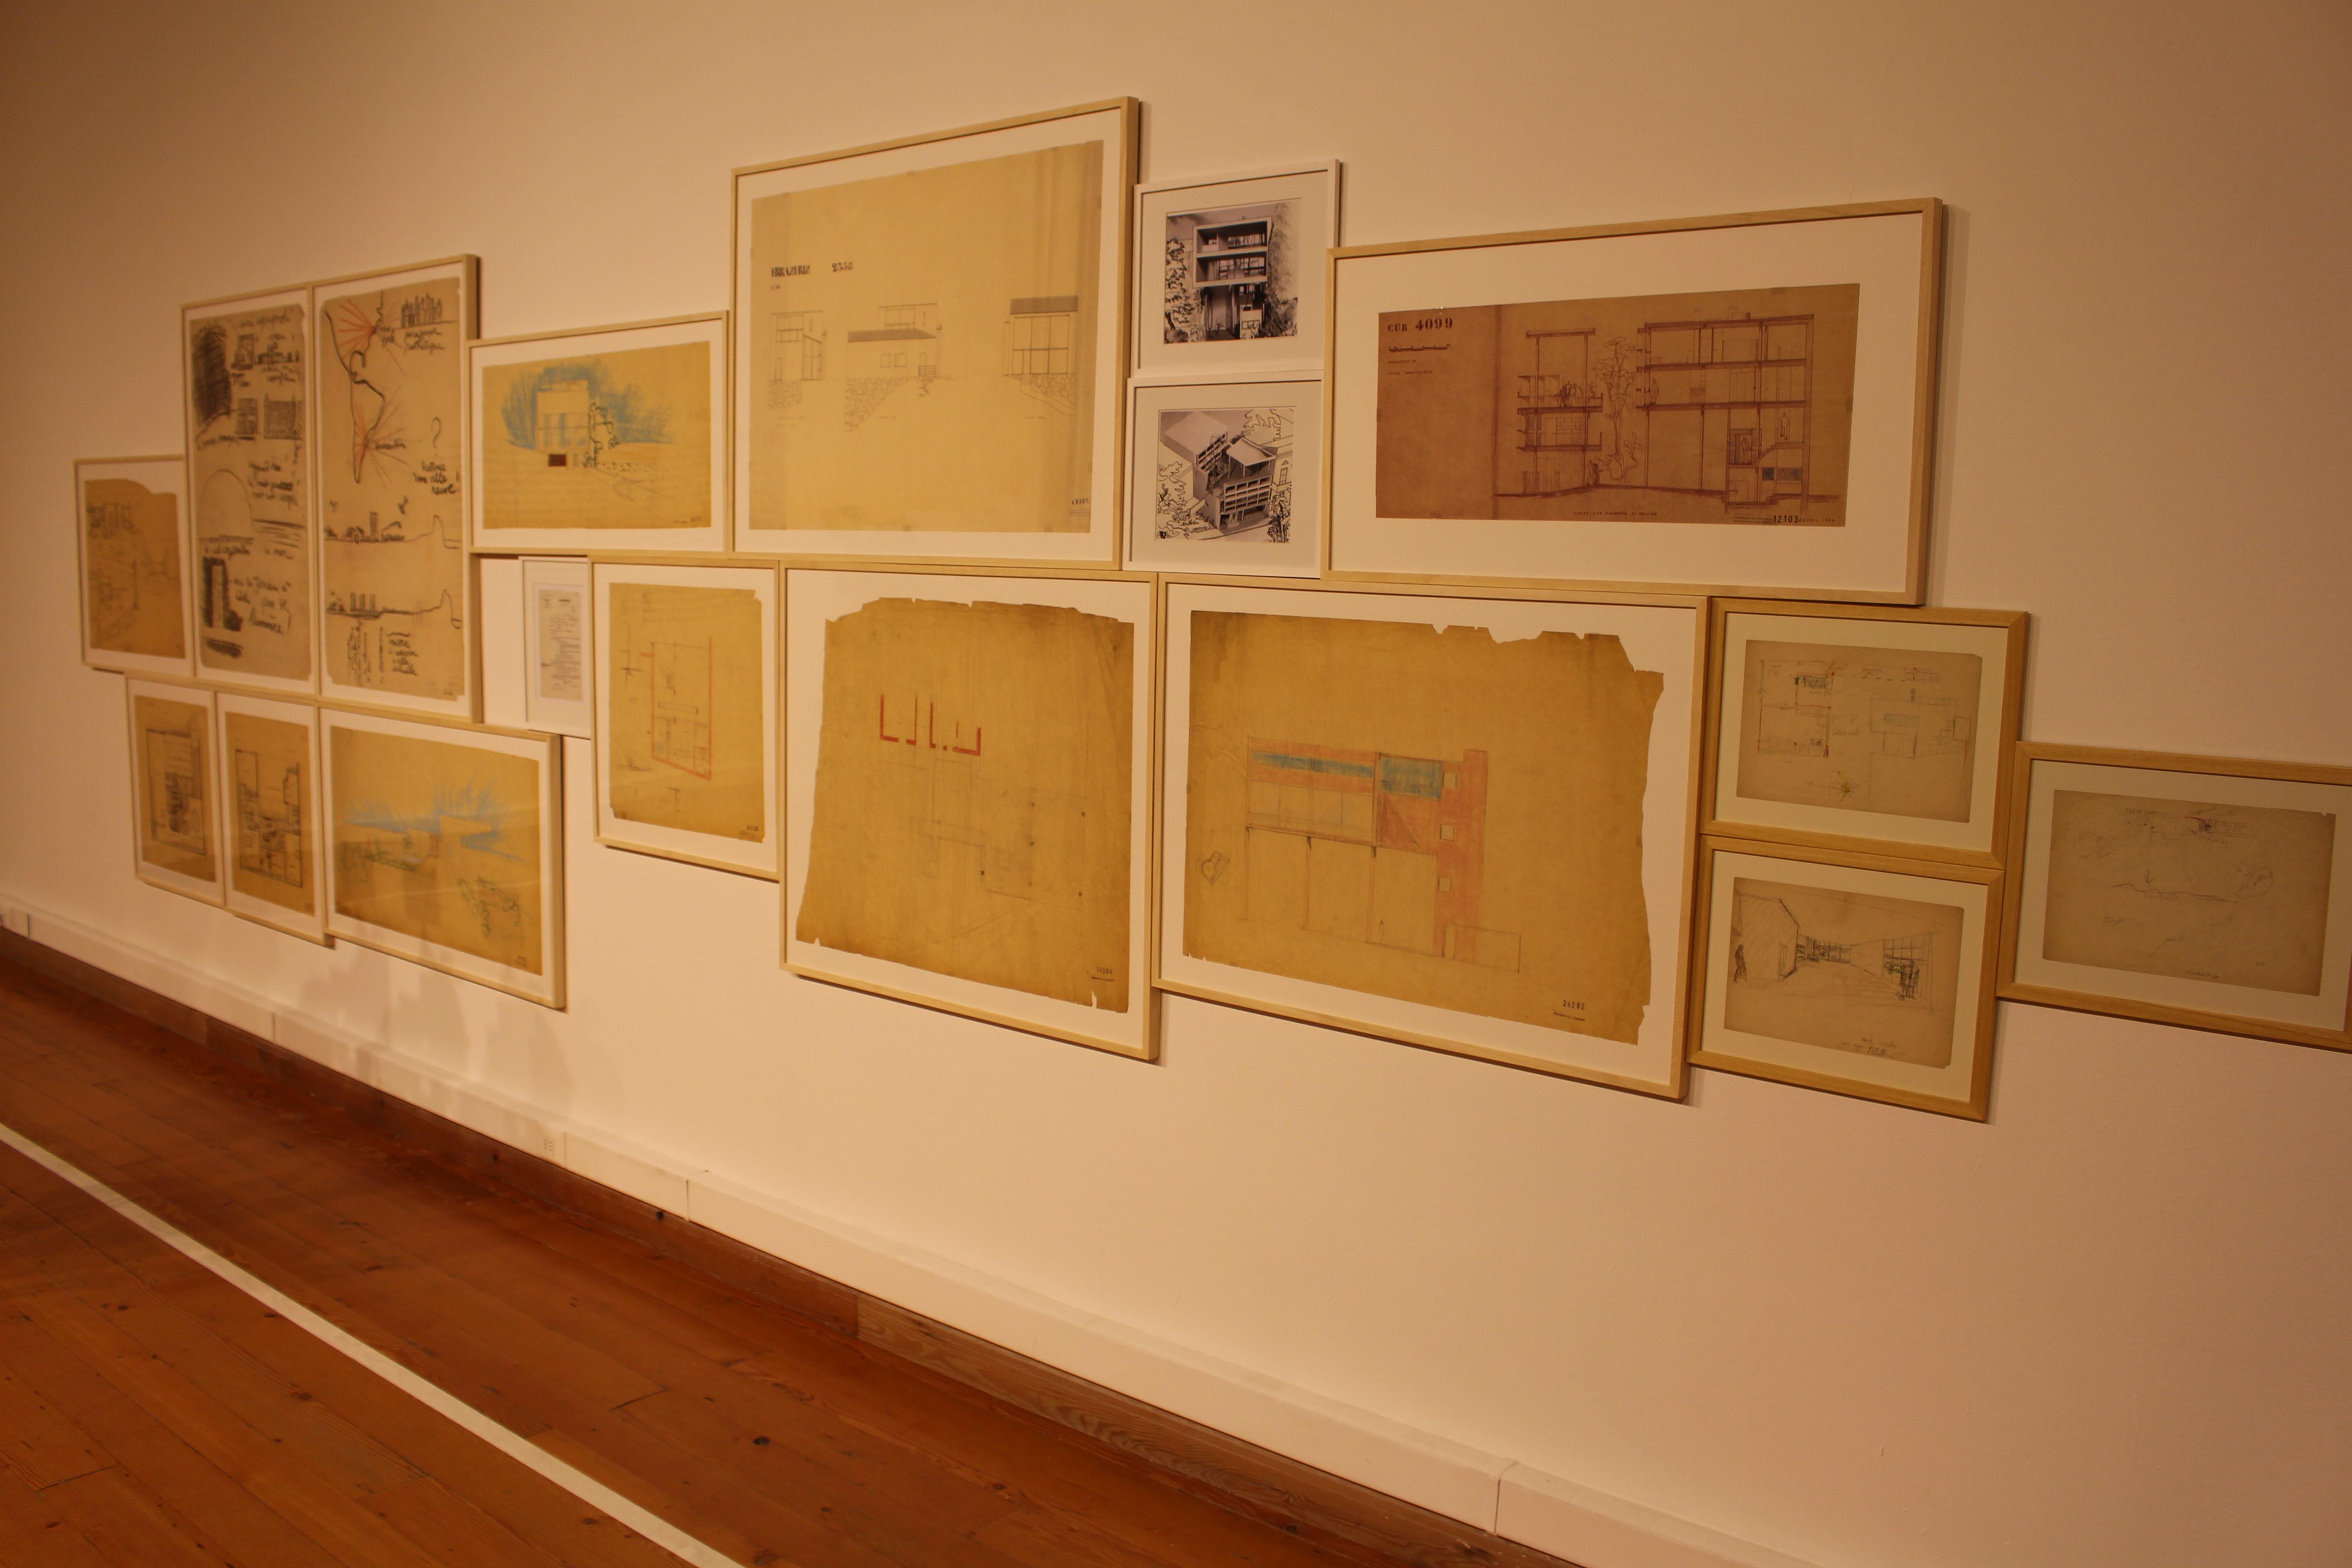 La exposición mostró planos y dibujos poco conocidos hechos por Le Corbusier en su estadía en América Latina.